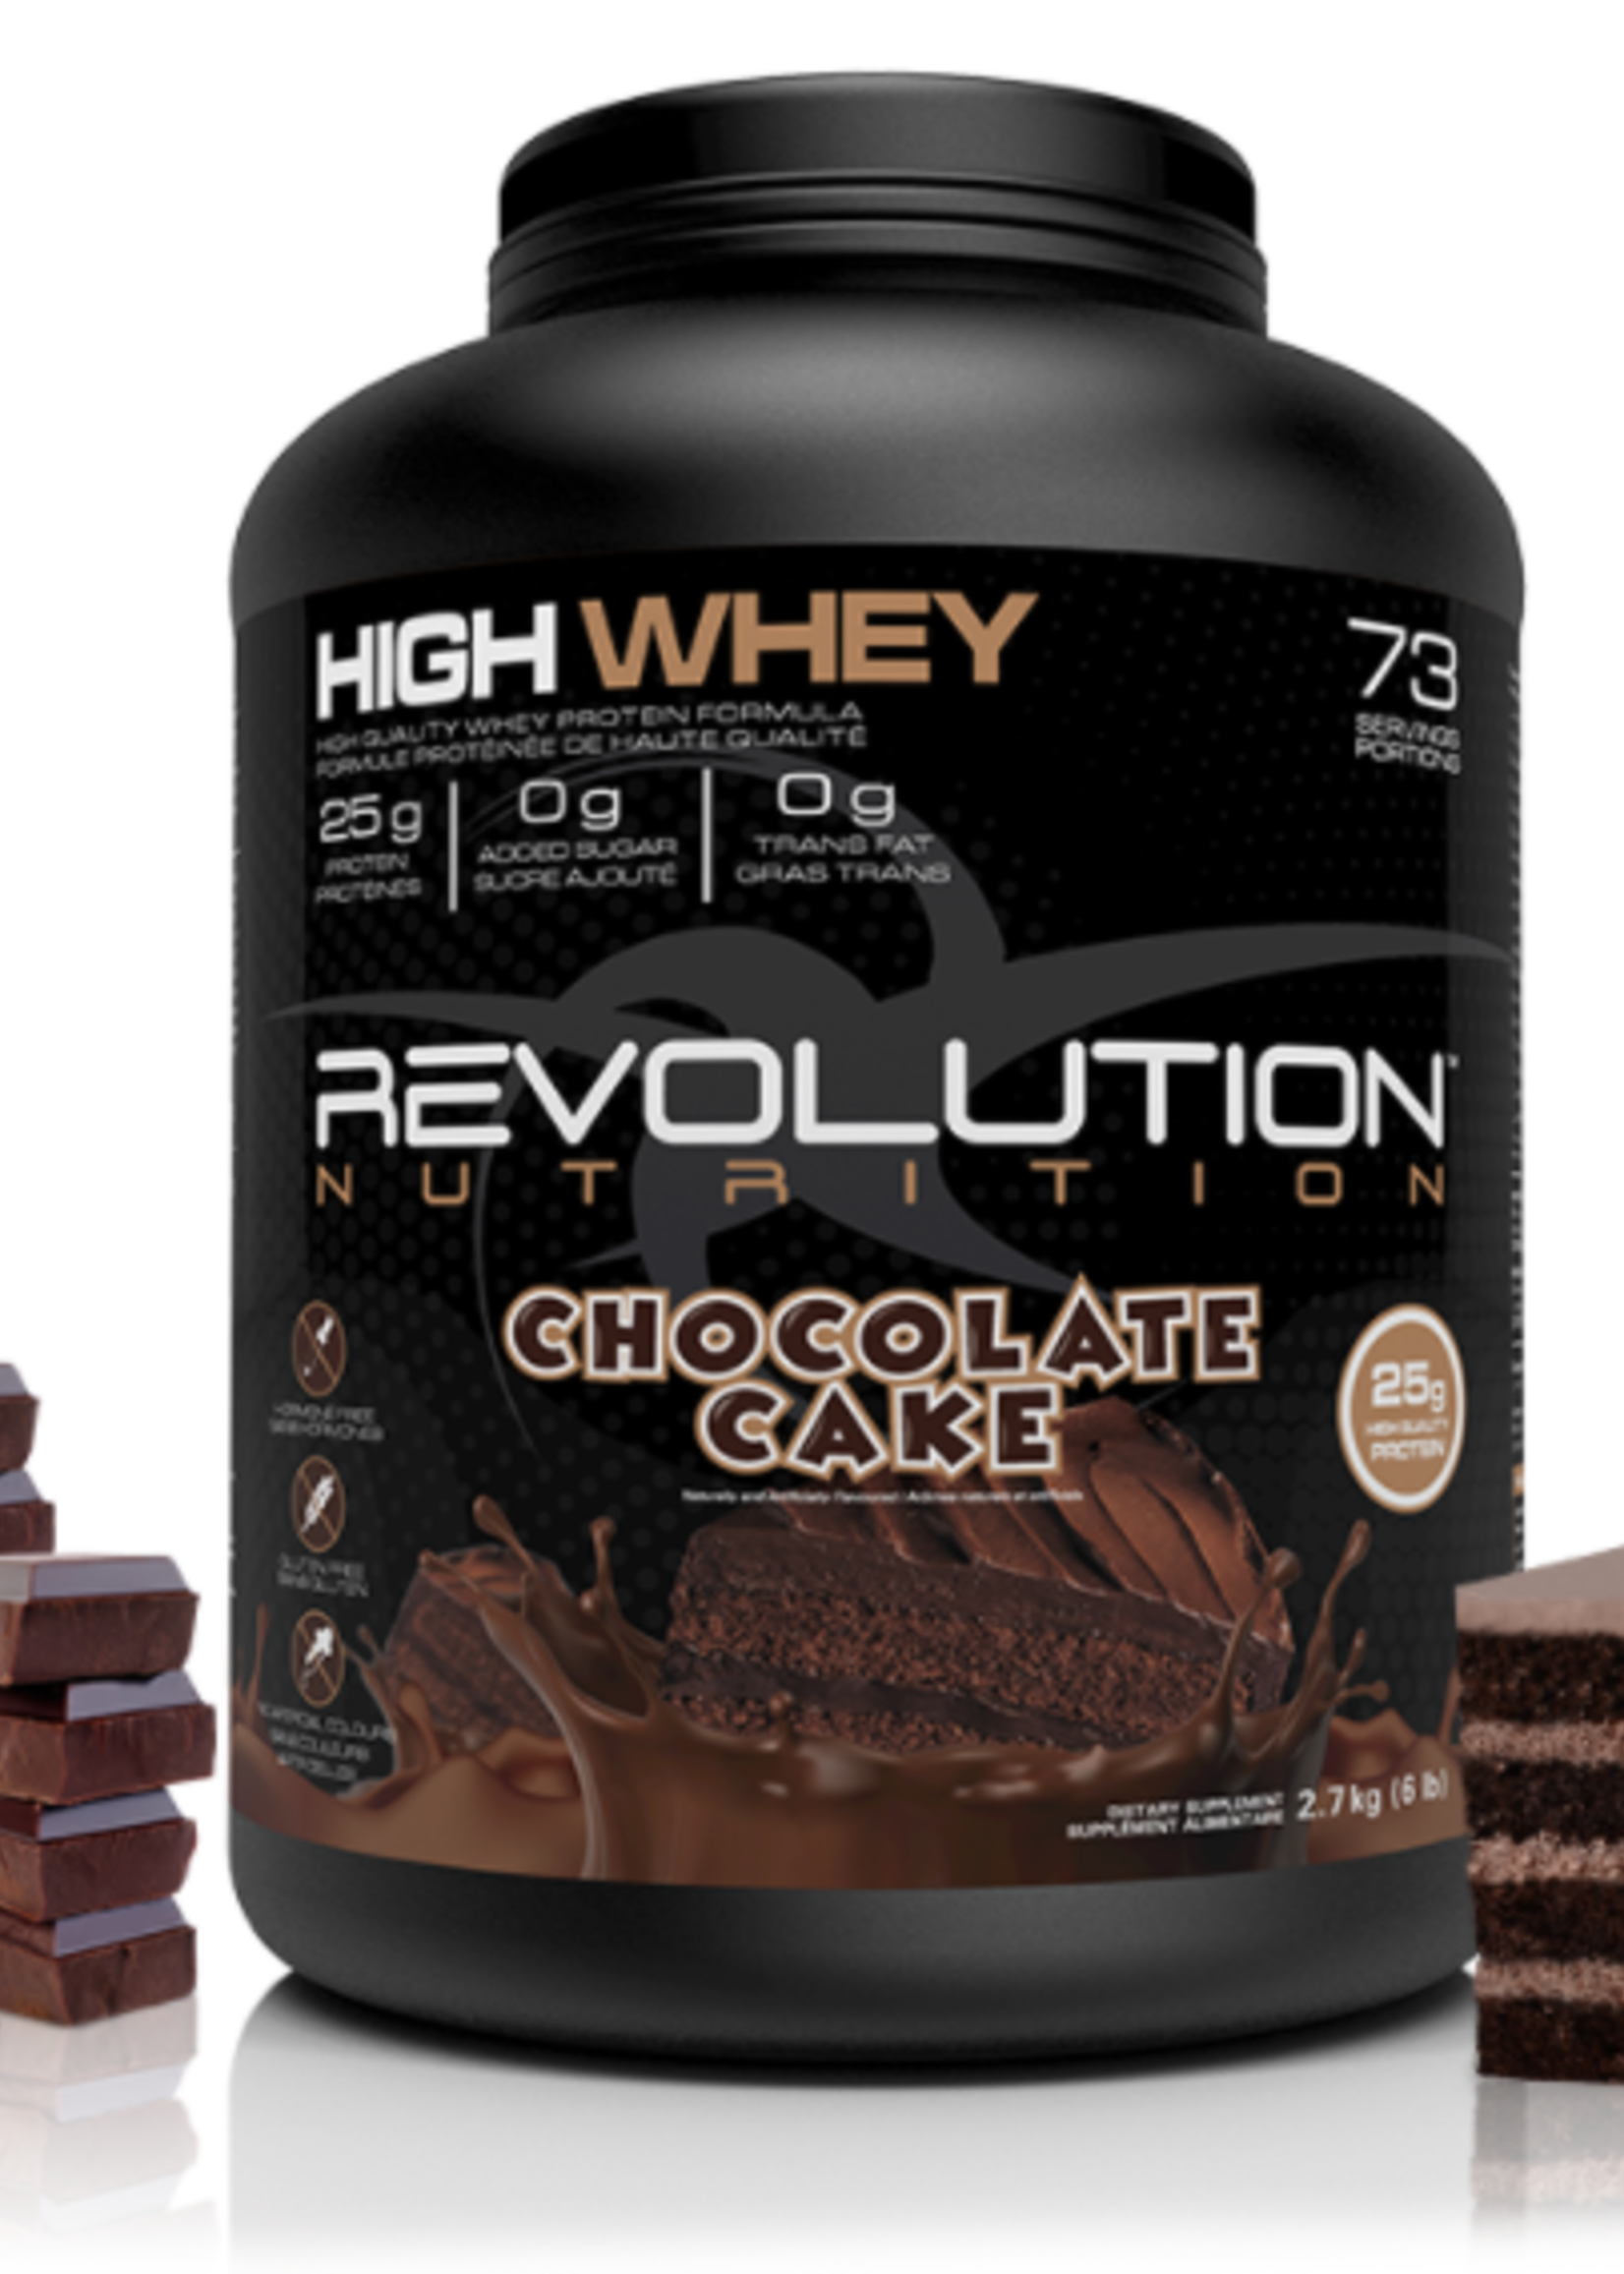 Révolution Vrac - 1lb protéine whey (révolution) Choco